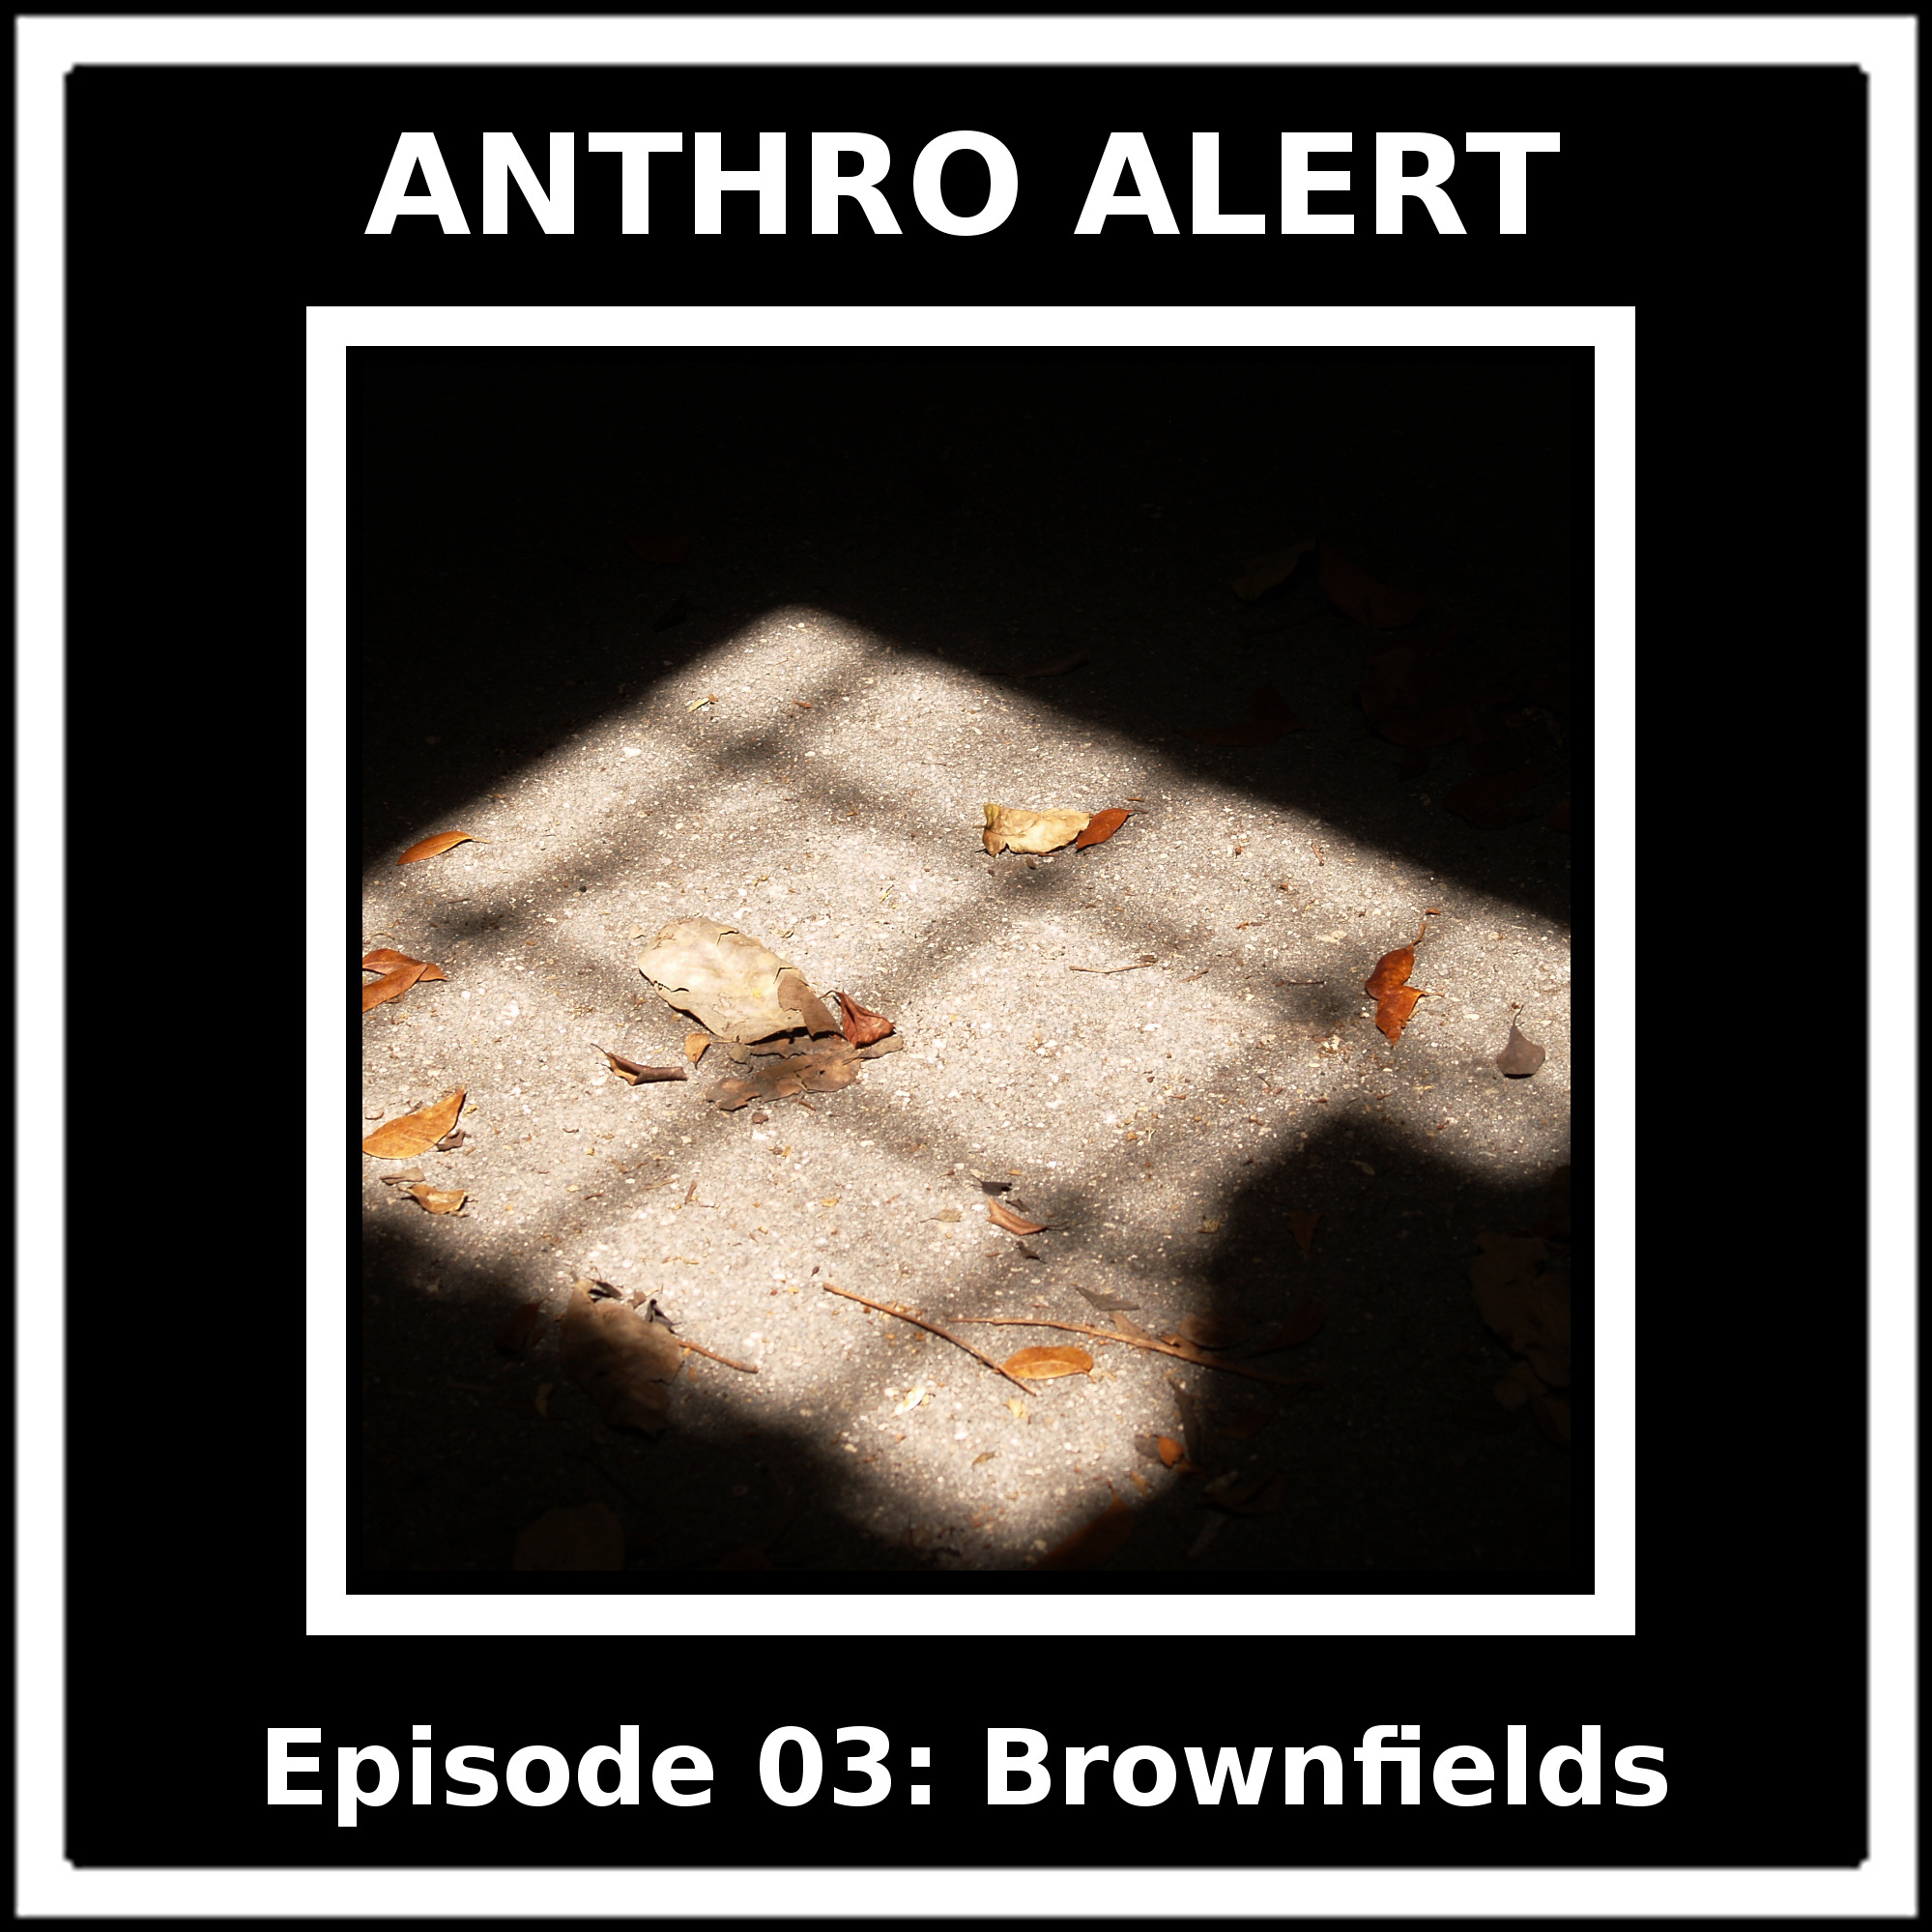 Episode 03: Brownfields